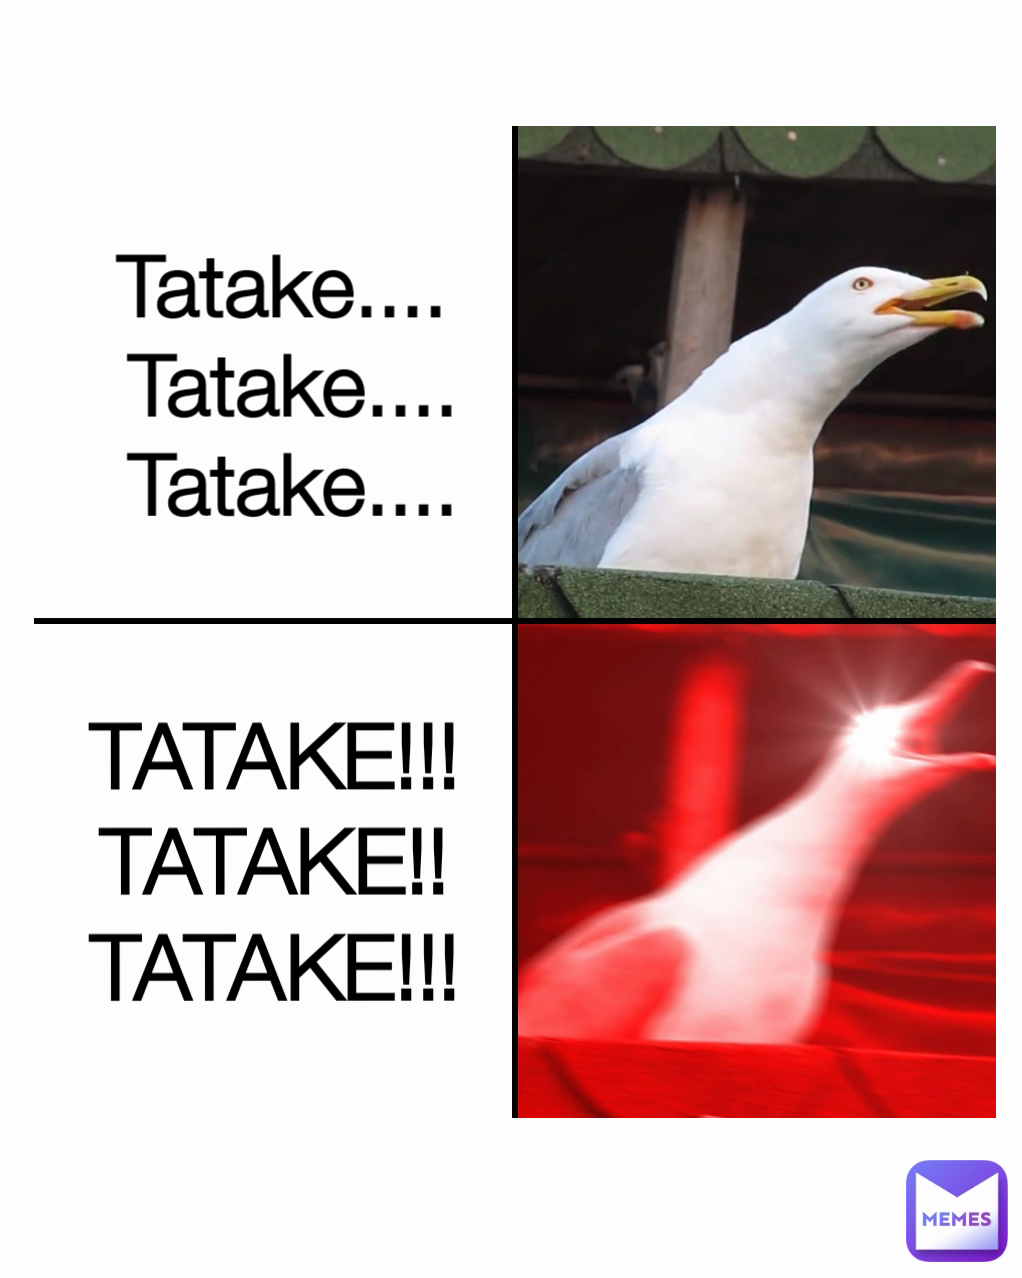 Tatake.... 
Tatake....
Tatake.... TATAKE!!! TATAKE!! TATAKE!!!